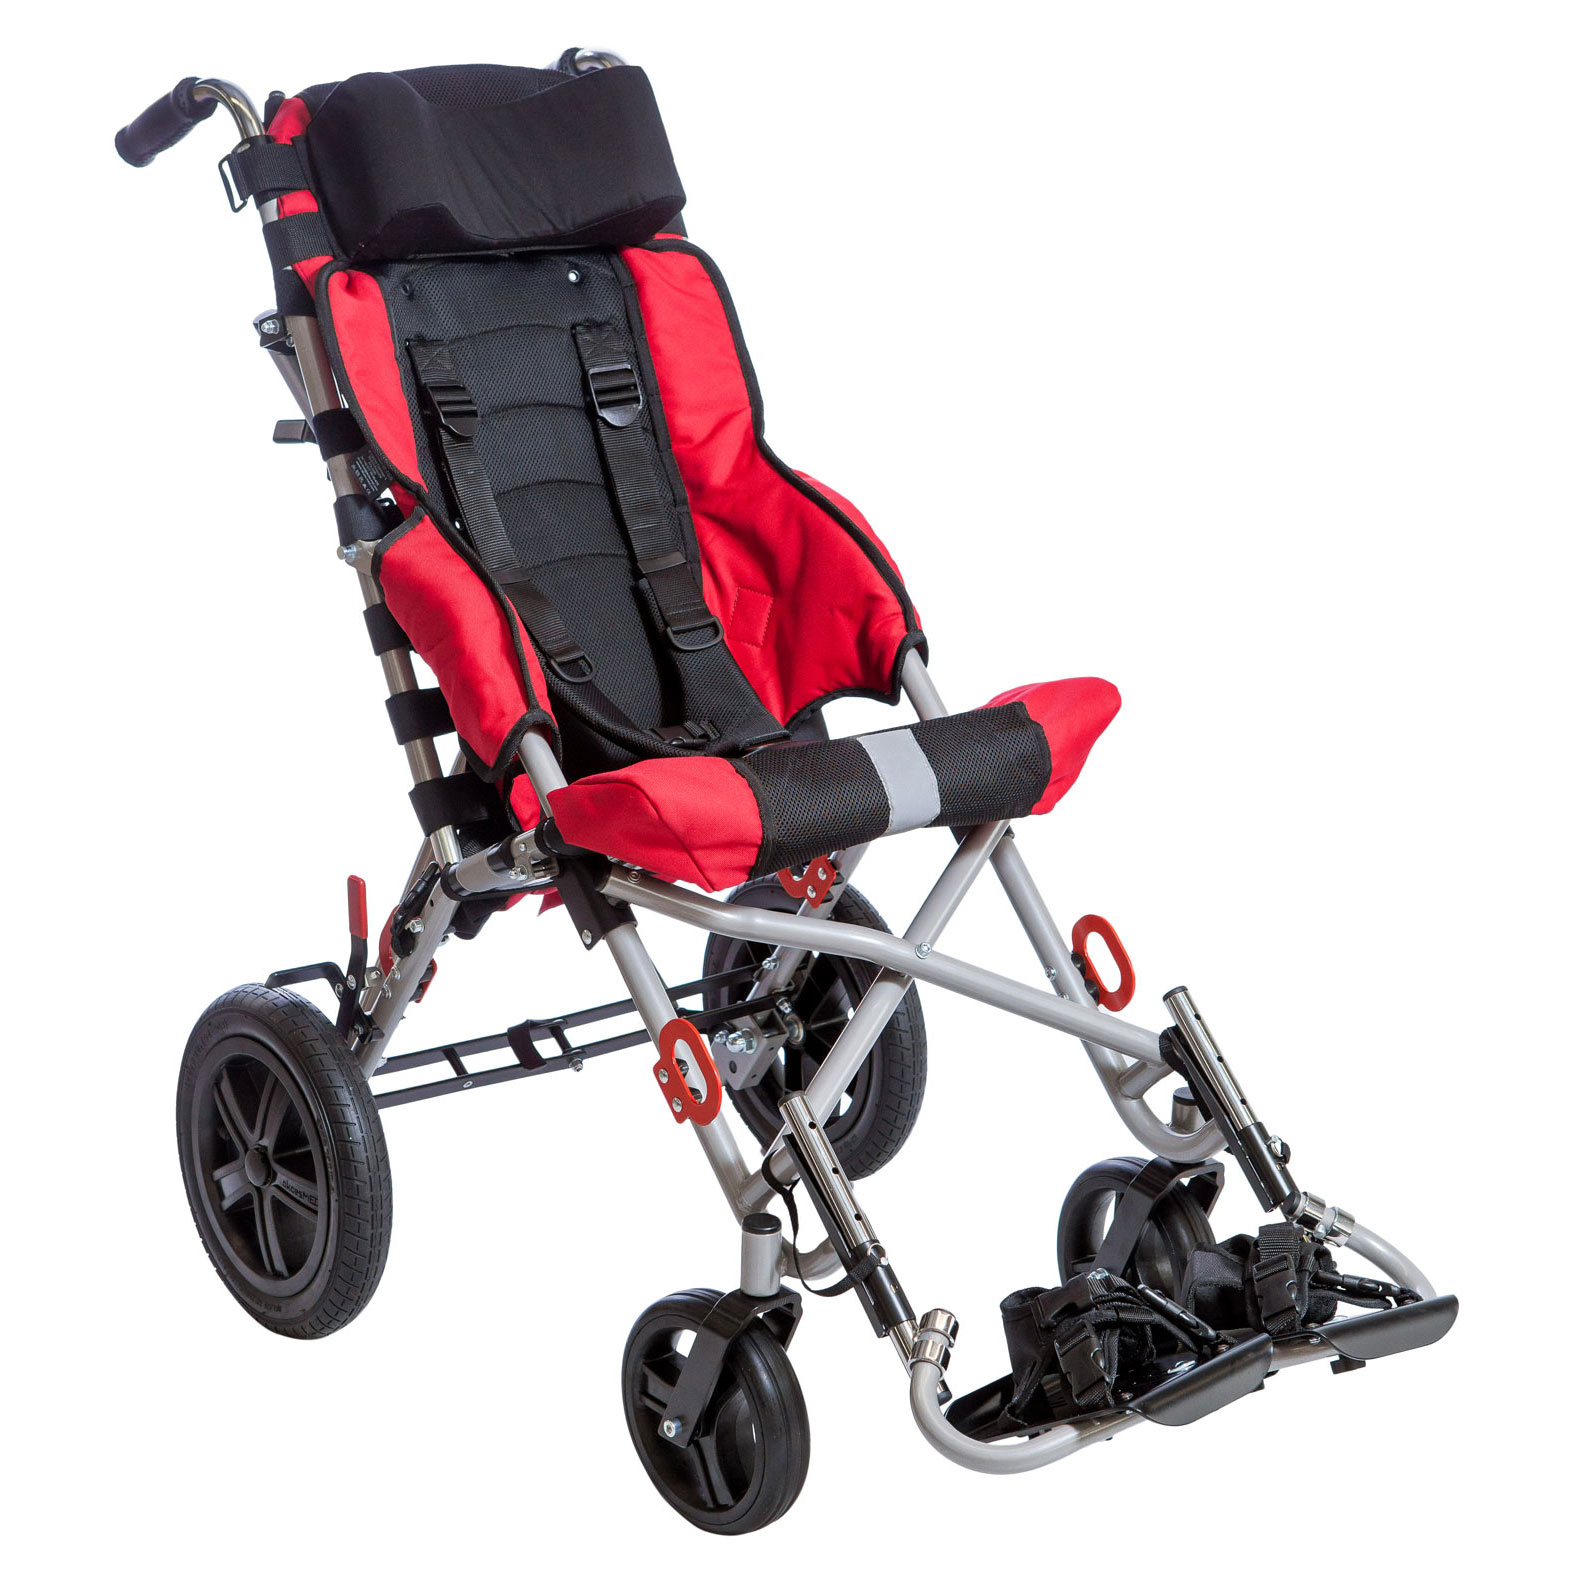 Прогулочная коляска для детей с дцп. Коляска AKCESMED рейсер. Рейсер коляска ДЦП. Кресло - коляска рейсер Улисес размер 3. Коляска инвалидная для ДЦП рейсер омбрелло.